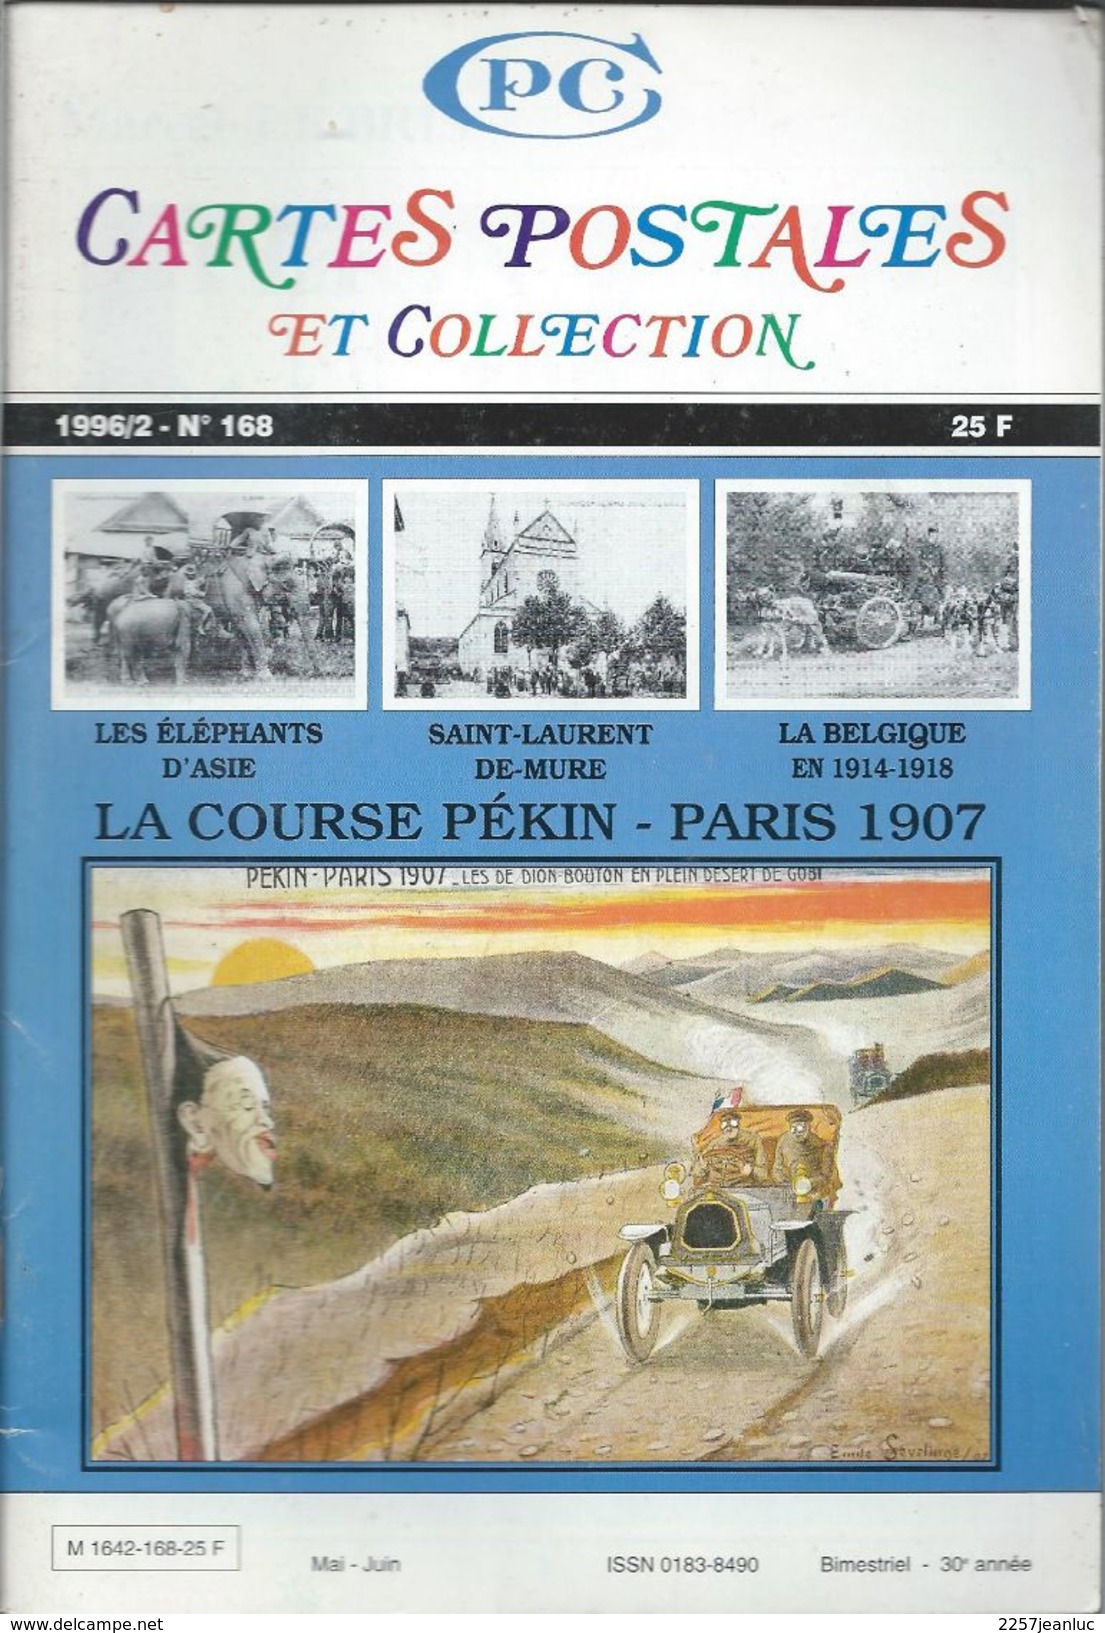 Cartes Postales Et Collections Juin 1996   Magazines N: 168 Llustration &  Thèmes Divers 98 Pages - Français